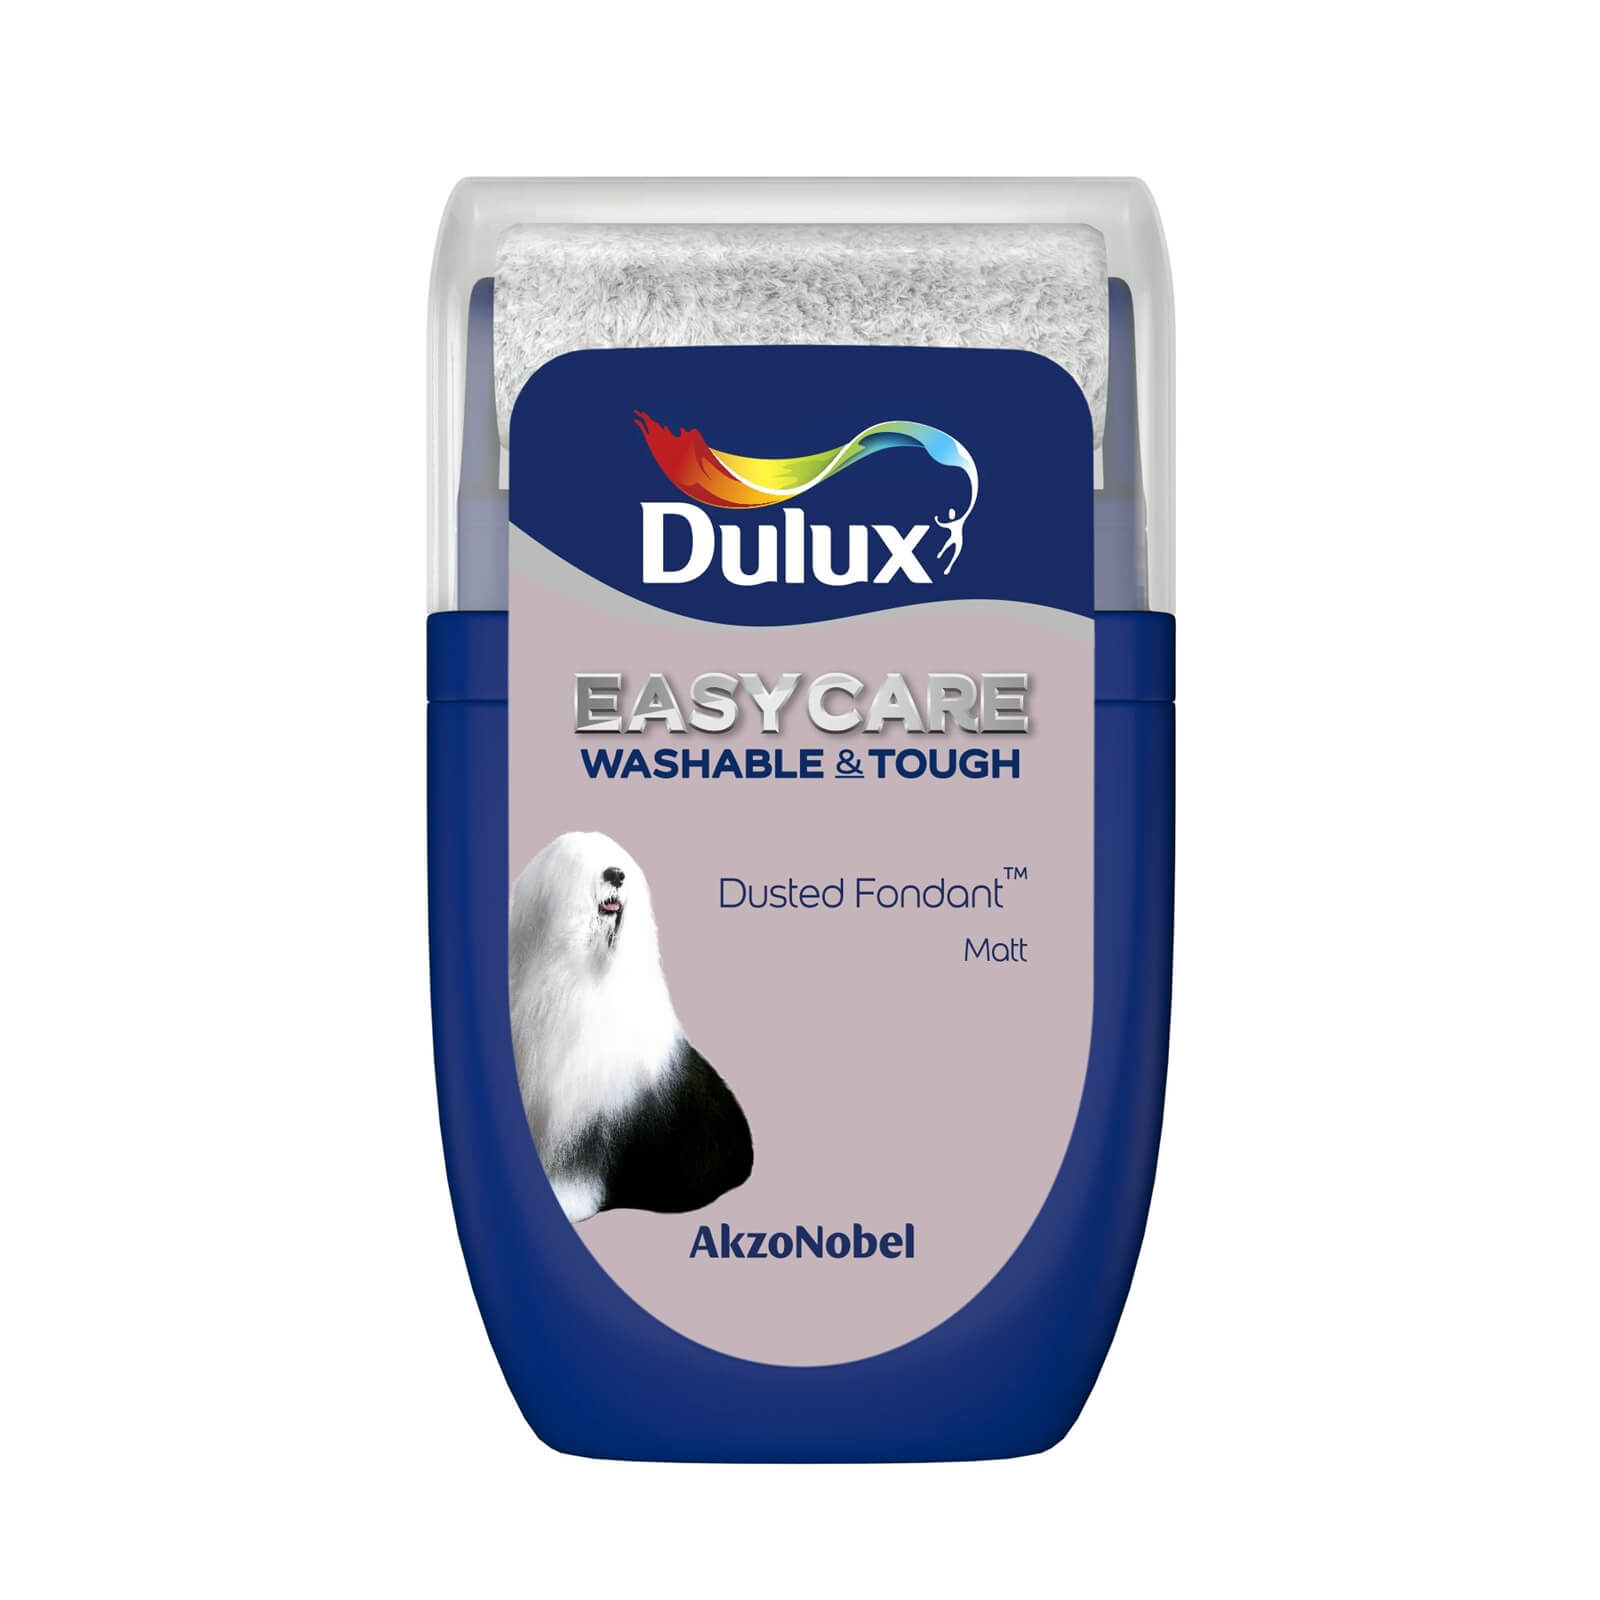 Dulux Easycare Washable & Tough Matt Paint Dusted Fondant - Tester 30ml